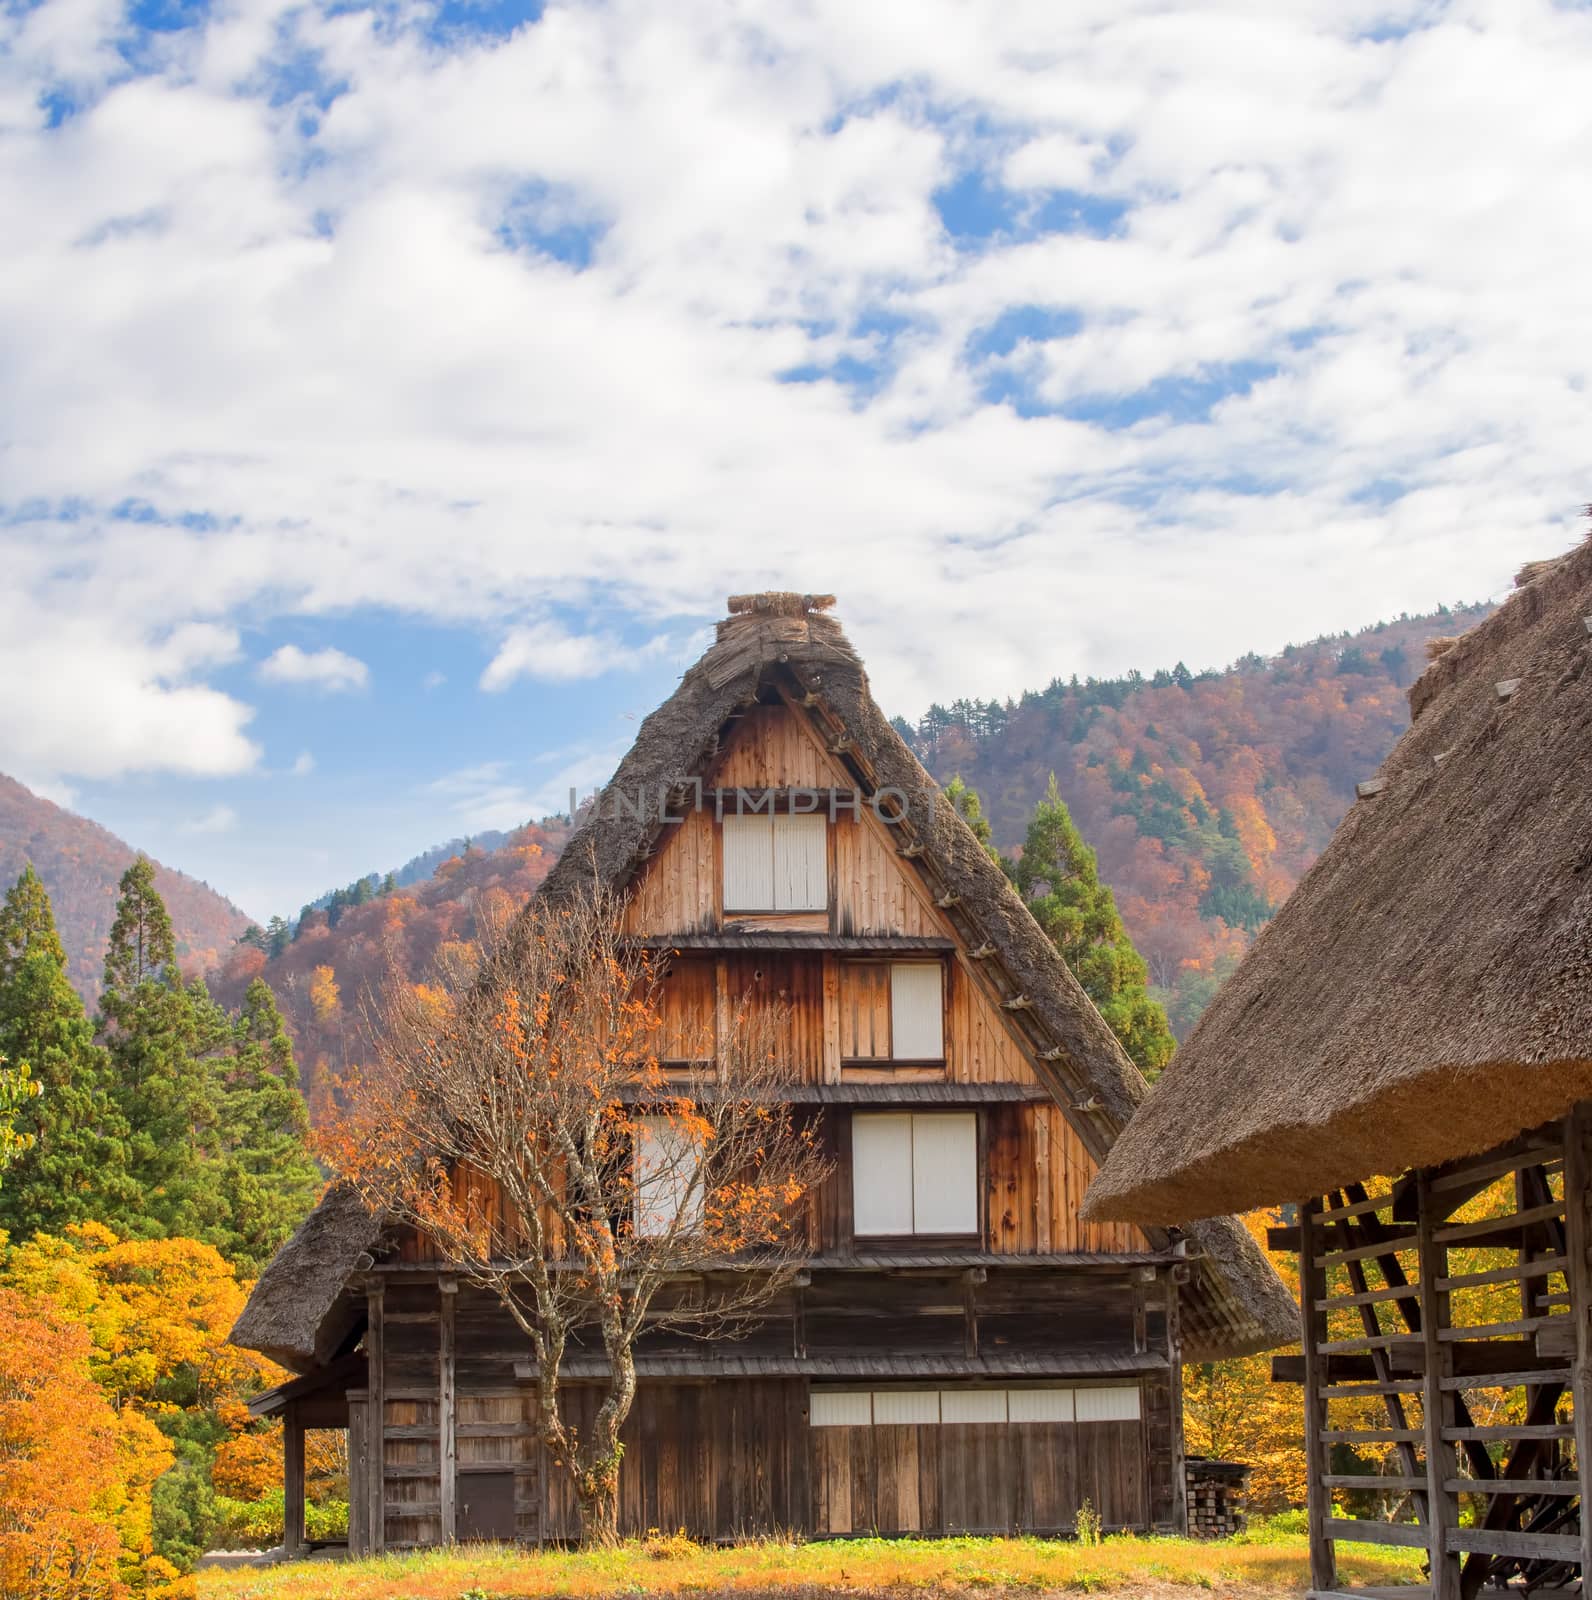 farmhouse at shirakawago by zkruger